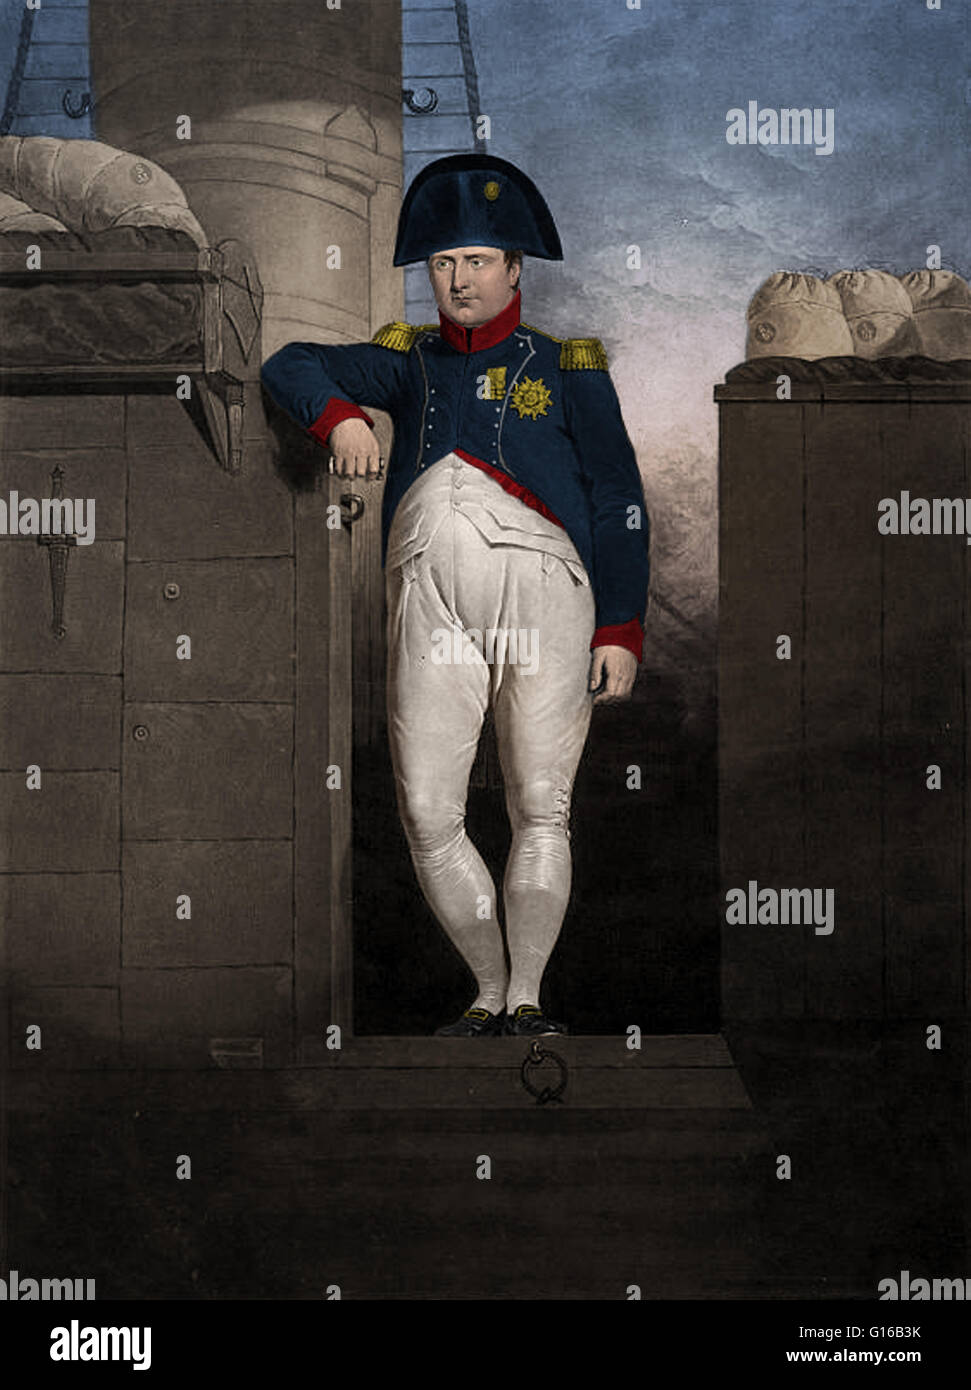 Napoleon Bonaparte (1769-1821) war ein französischer militärischer und politischer Führer während der letzten Stadien der französischen Revolution. Als Napoleon i., er war Kaiser der Franzosen von 1804 bis 1815. Seine Rechtsreformen der napoleonischen Code wurde ein Haupteinfluß o Stockfoto